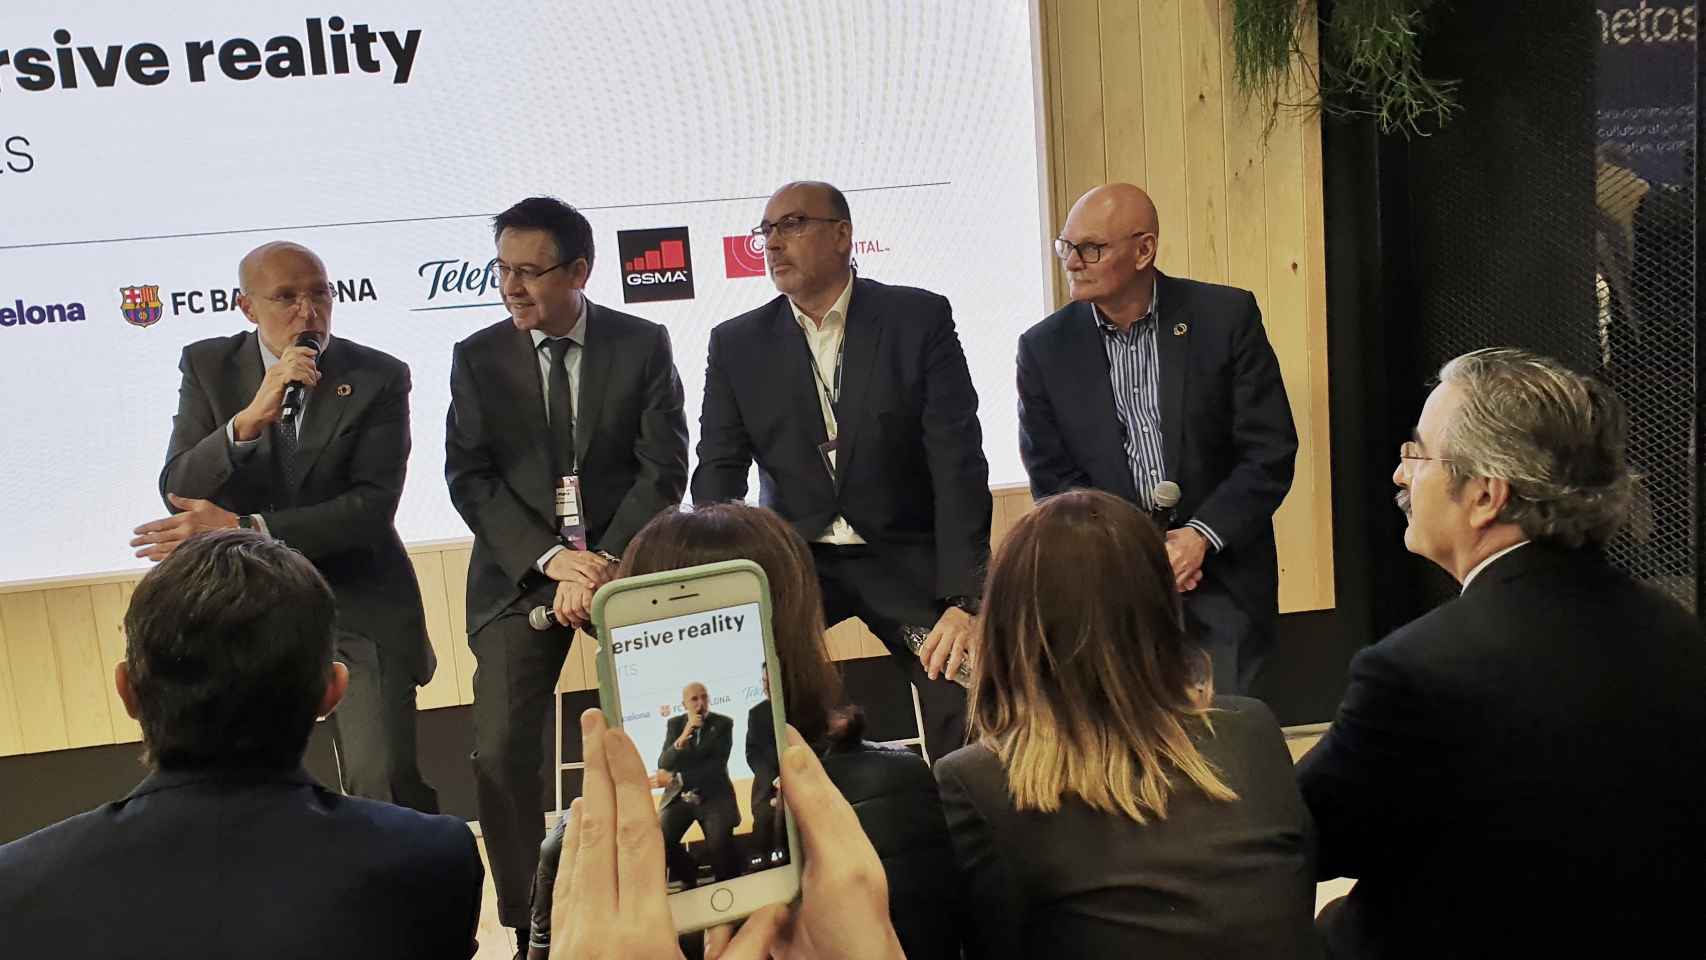 Carles Grau, de Mobile World Capital, Josep María Bartomeu, presidente del FC Barcelona, Emilio Gayo, presidente de Telefónica y John Hoffman, CEO de GSMA, durante la presentación.